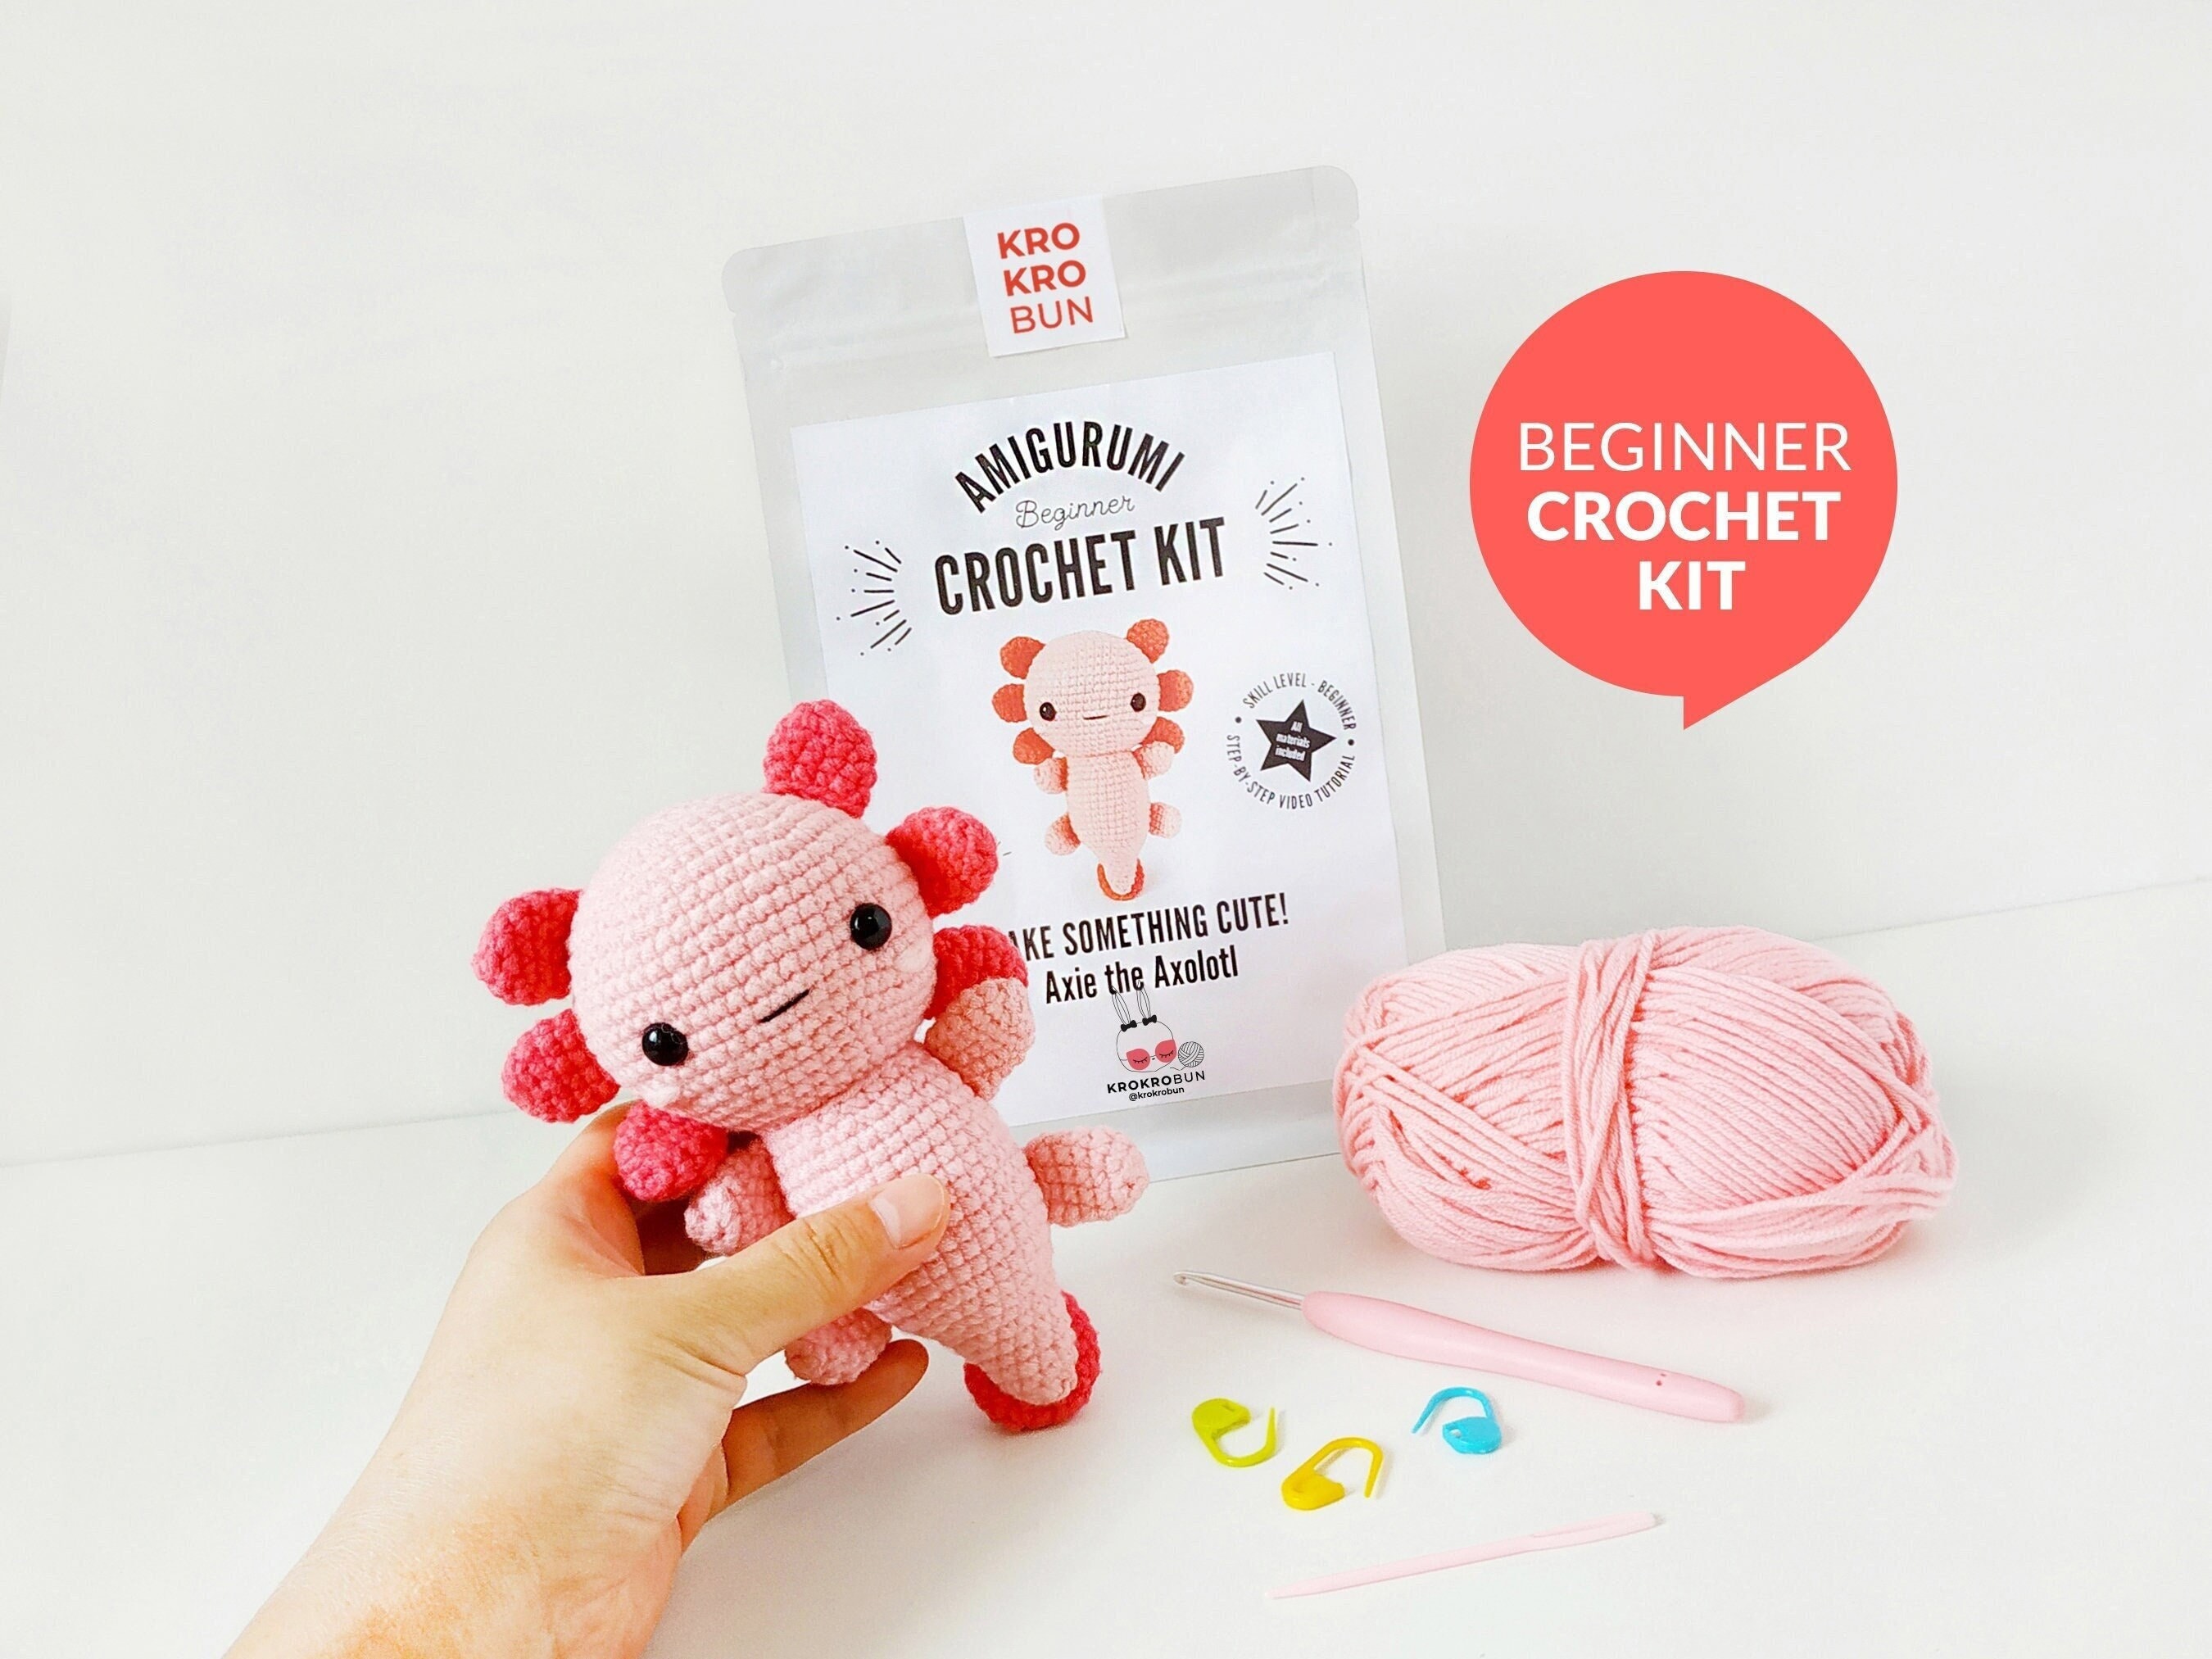 Crochet Kit For Beginners Crochet Starter Kit Learn To Crochet